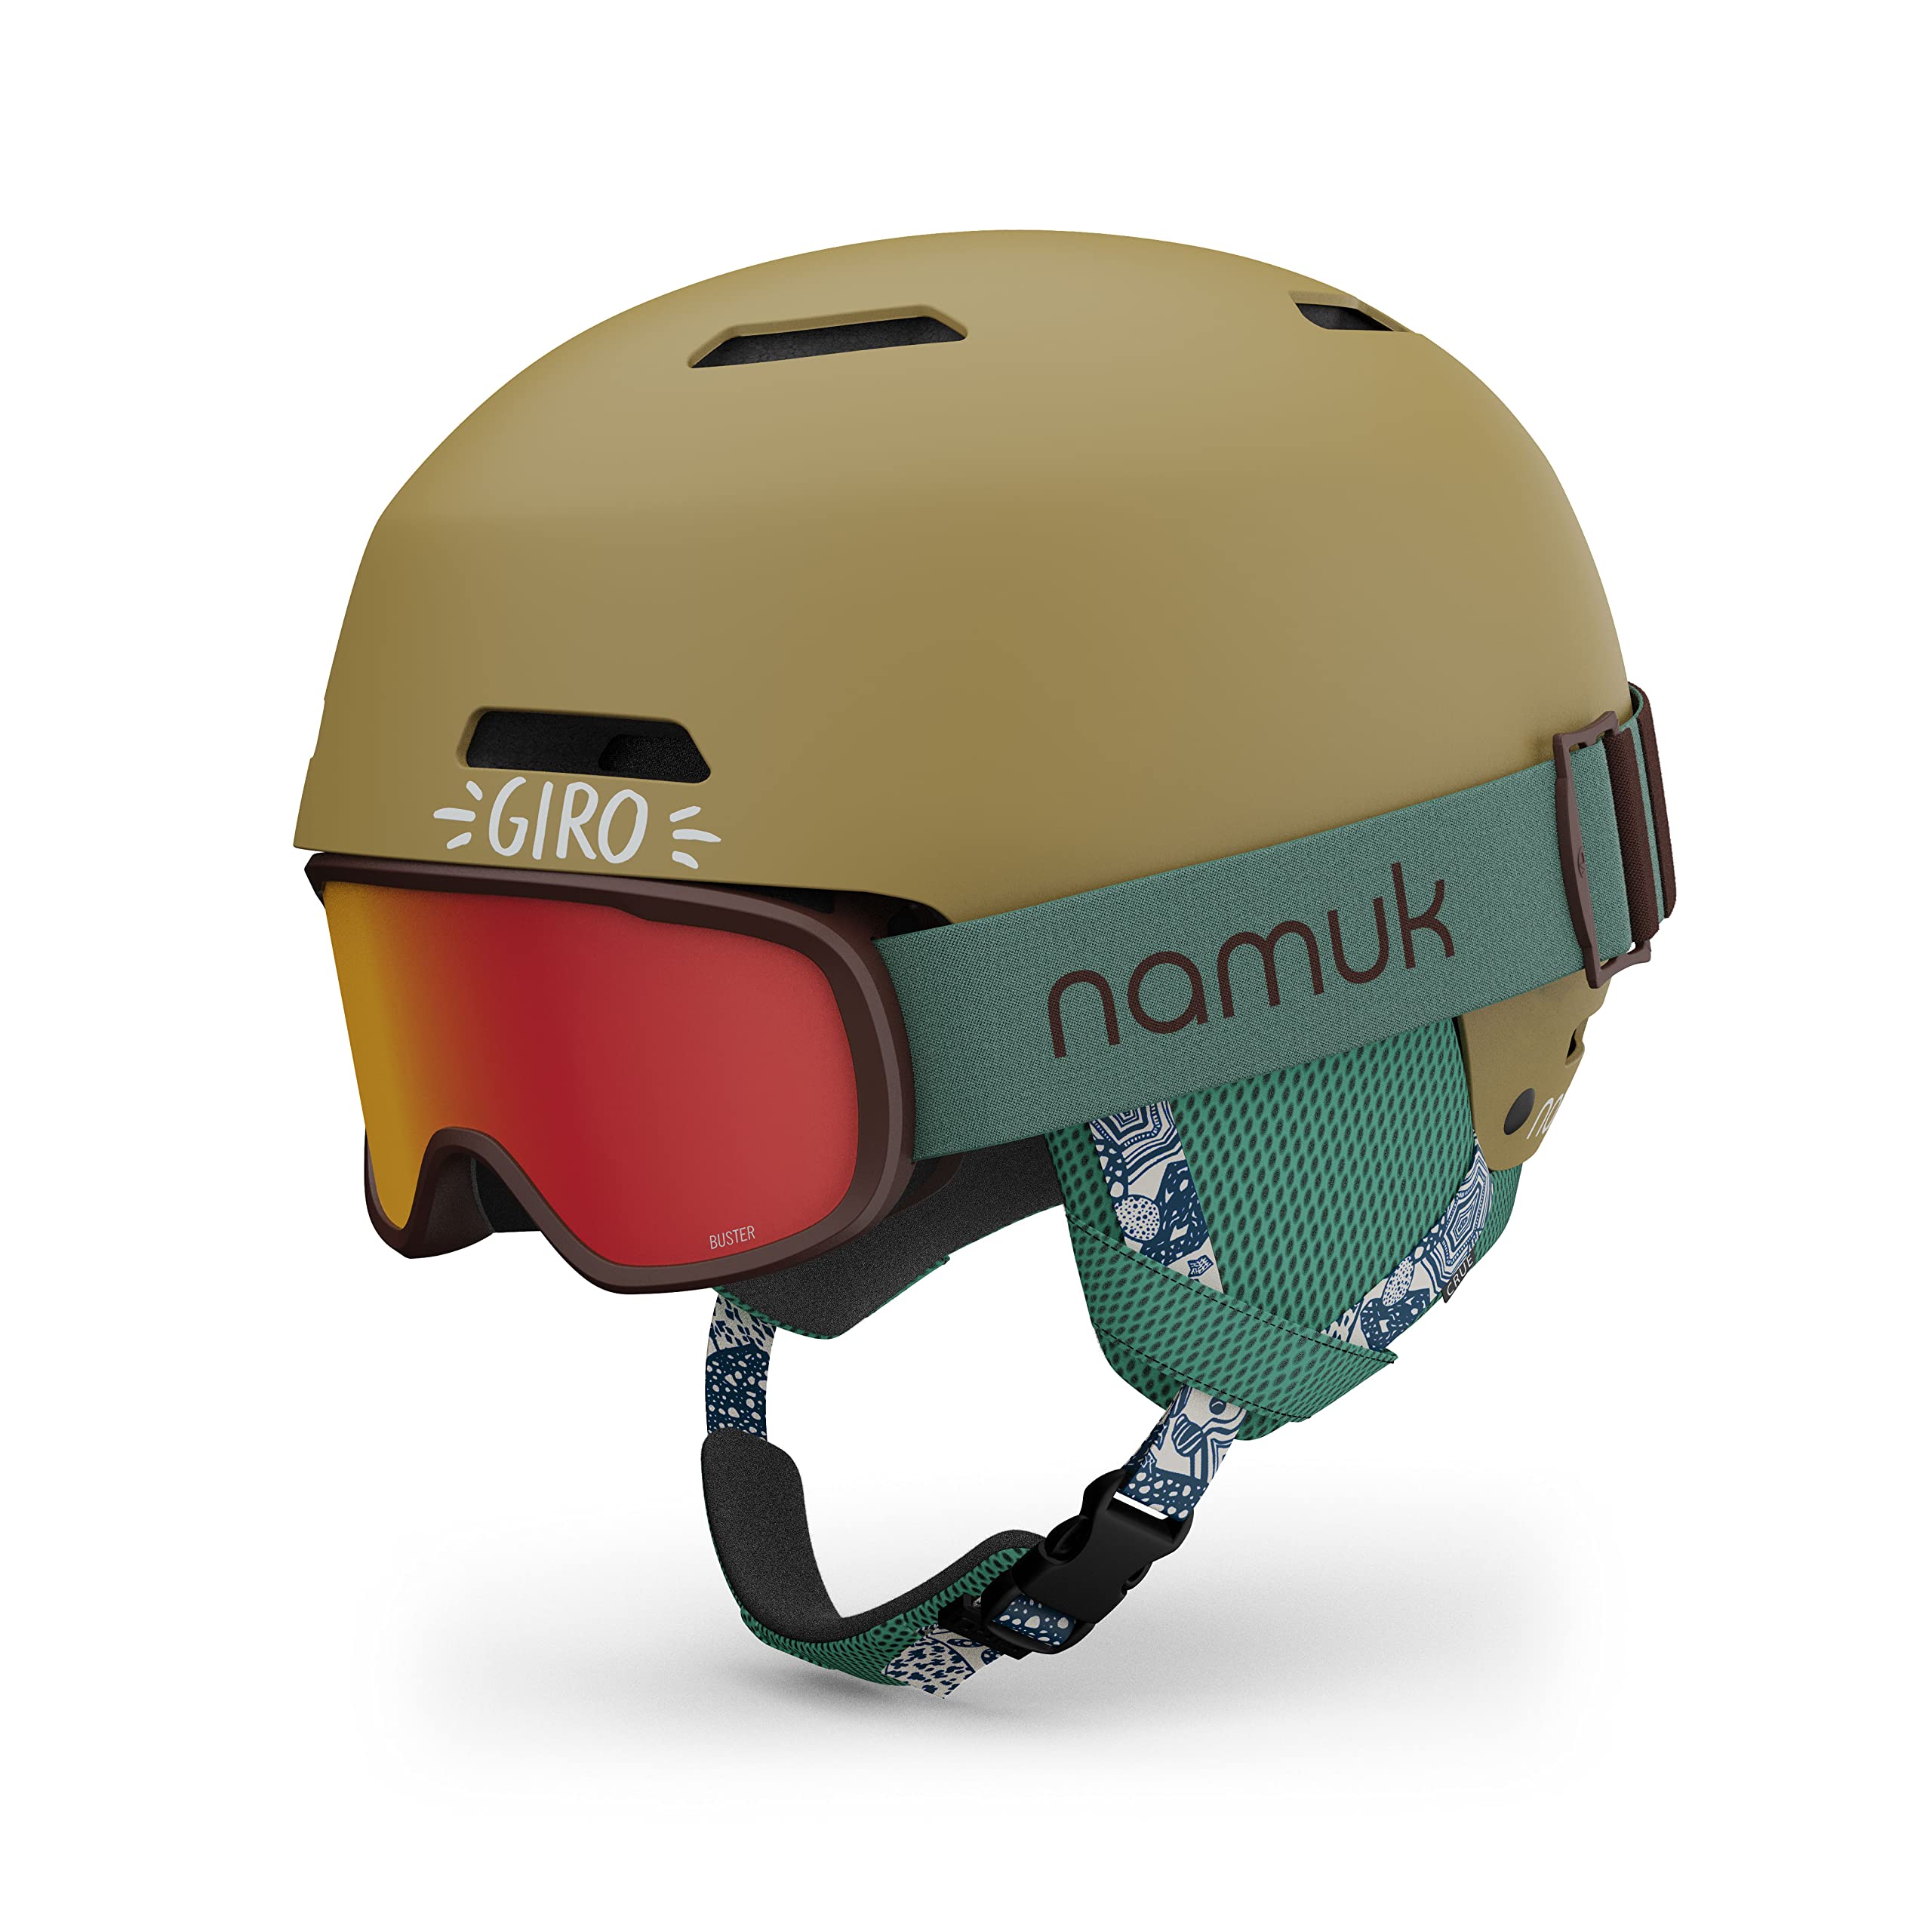 Giro Crue Combo Pack Kids Ski Helmet - Snowboarding Helmet with Matching Goggles for Youth Boys Girls Namuk GoldNorthern